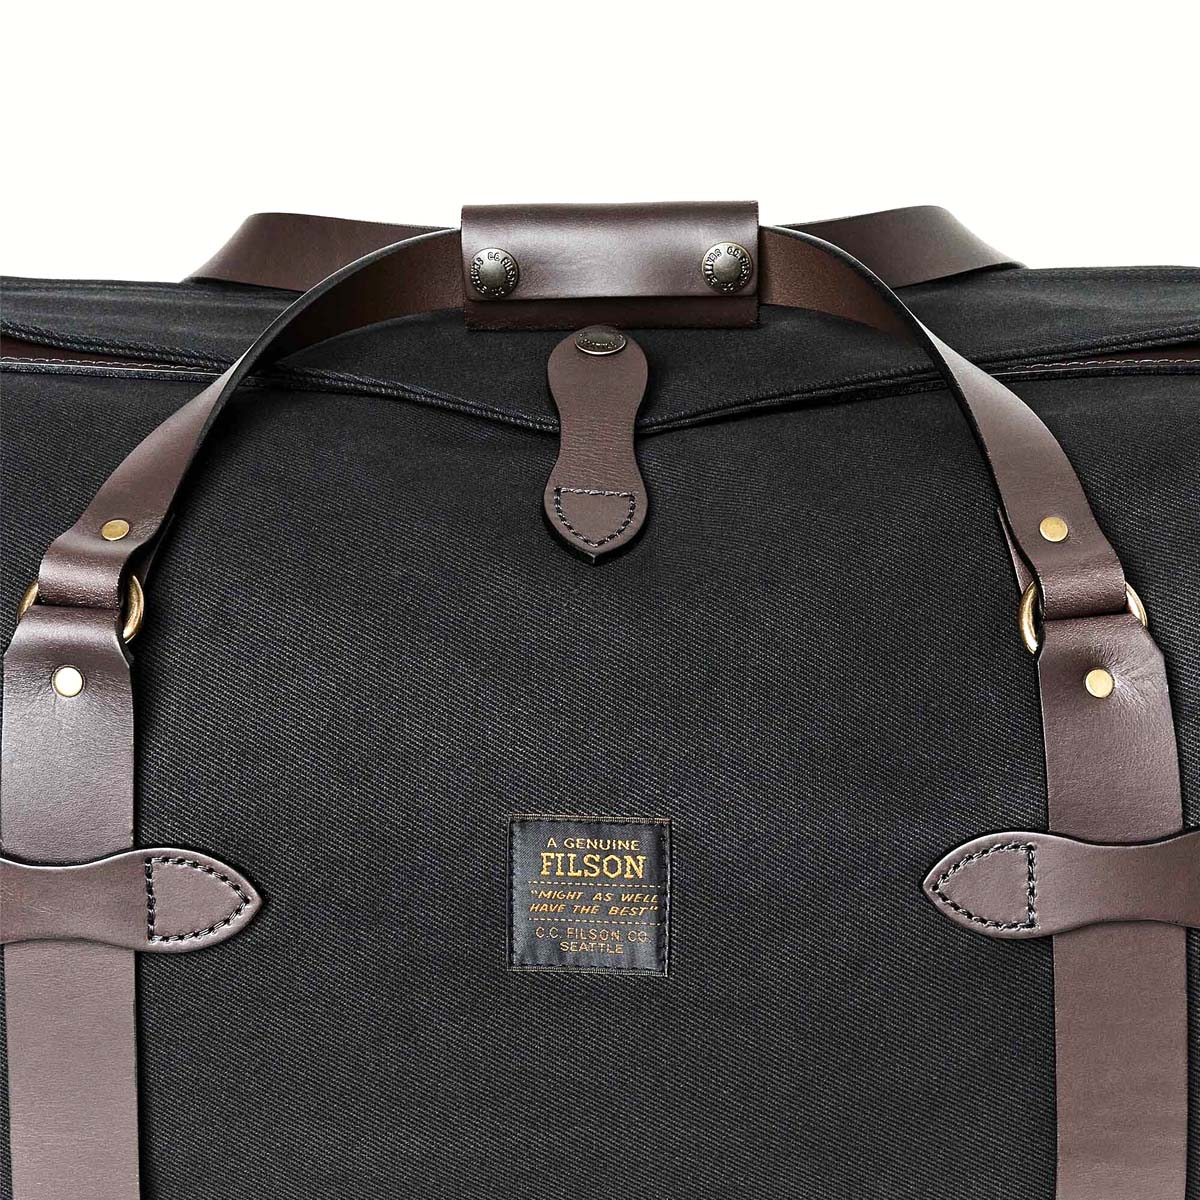 Filson Duffle Bag Medium Black, perfekt für einen Wochenendausflug oder eine kleine Geschäftsreise